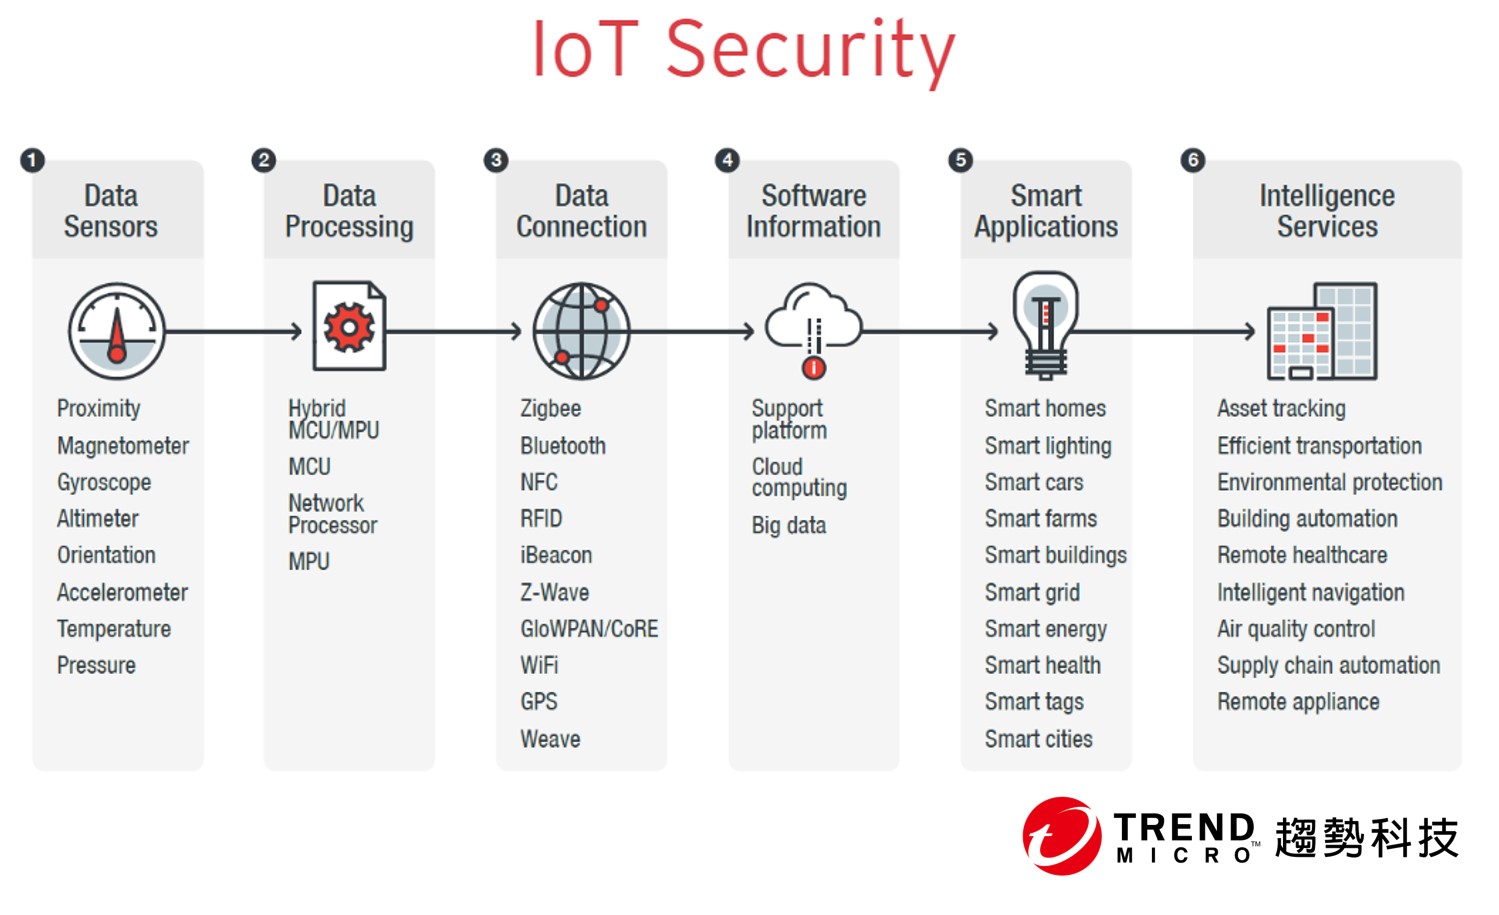 趨勢科技 IoT Security 2.0 改善使用者防護、提升裝置製造商信譽